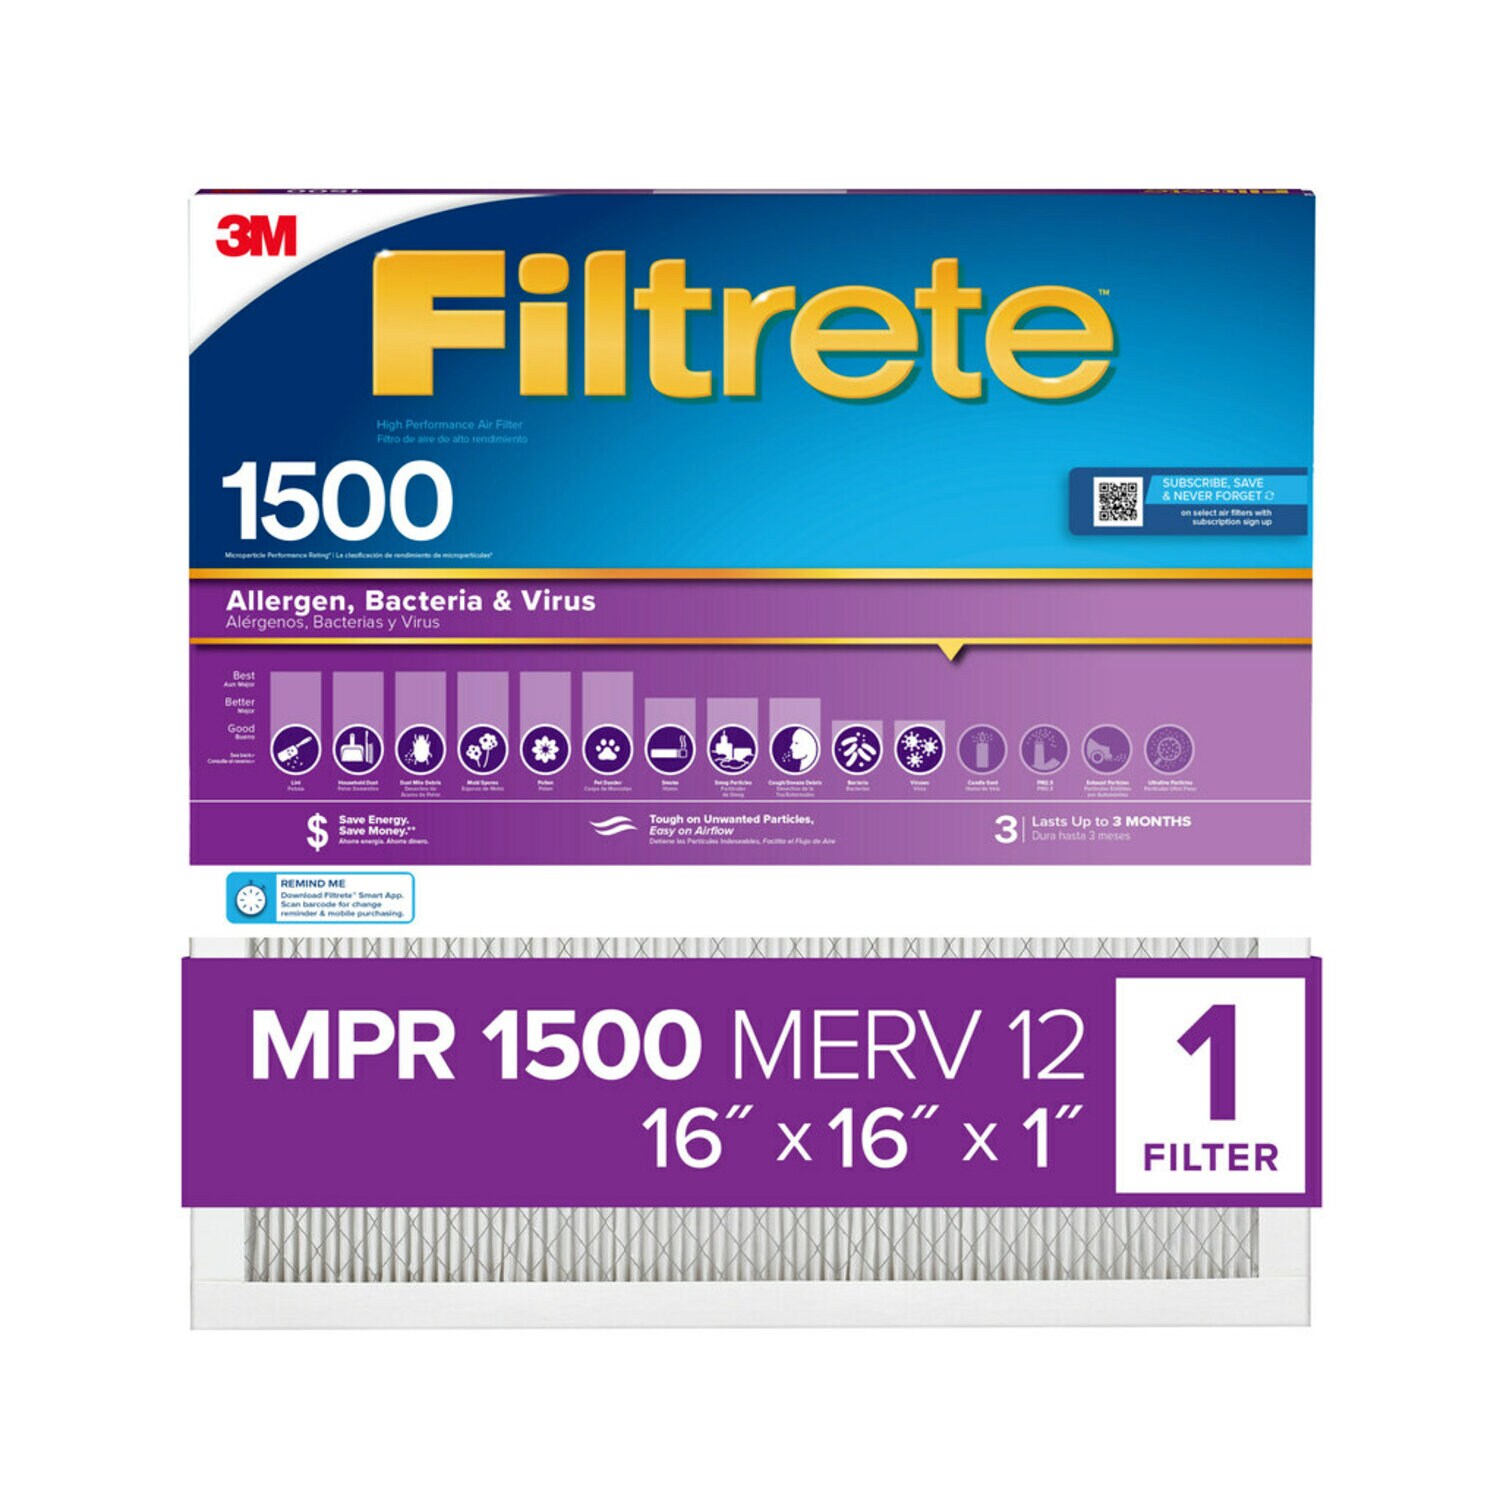 7100264982 - Filtrete High Performance Air Filter 1500 MPR 2016DC-4, 16 in x 16 in x 1 in (40.6 cm x 40.6 cm x 2.5 cm)